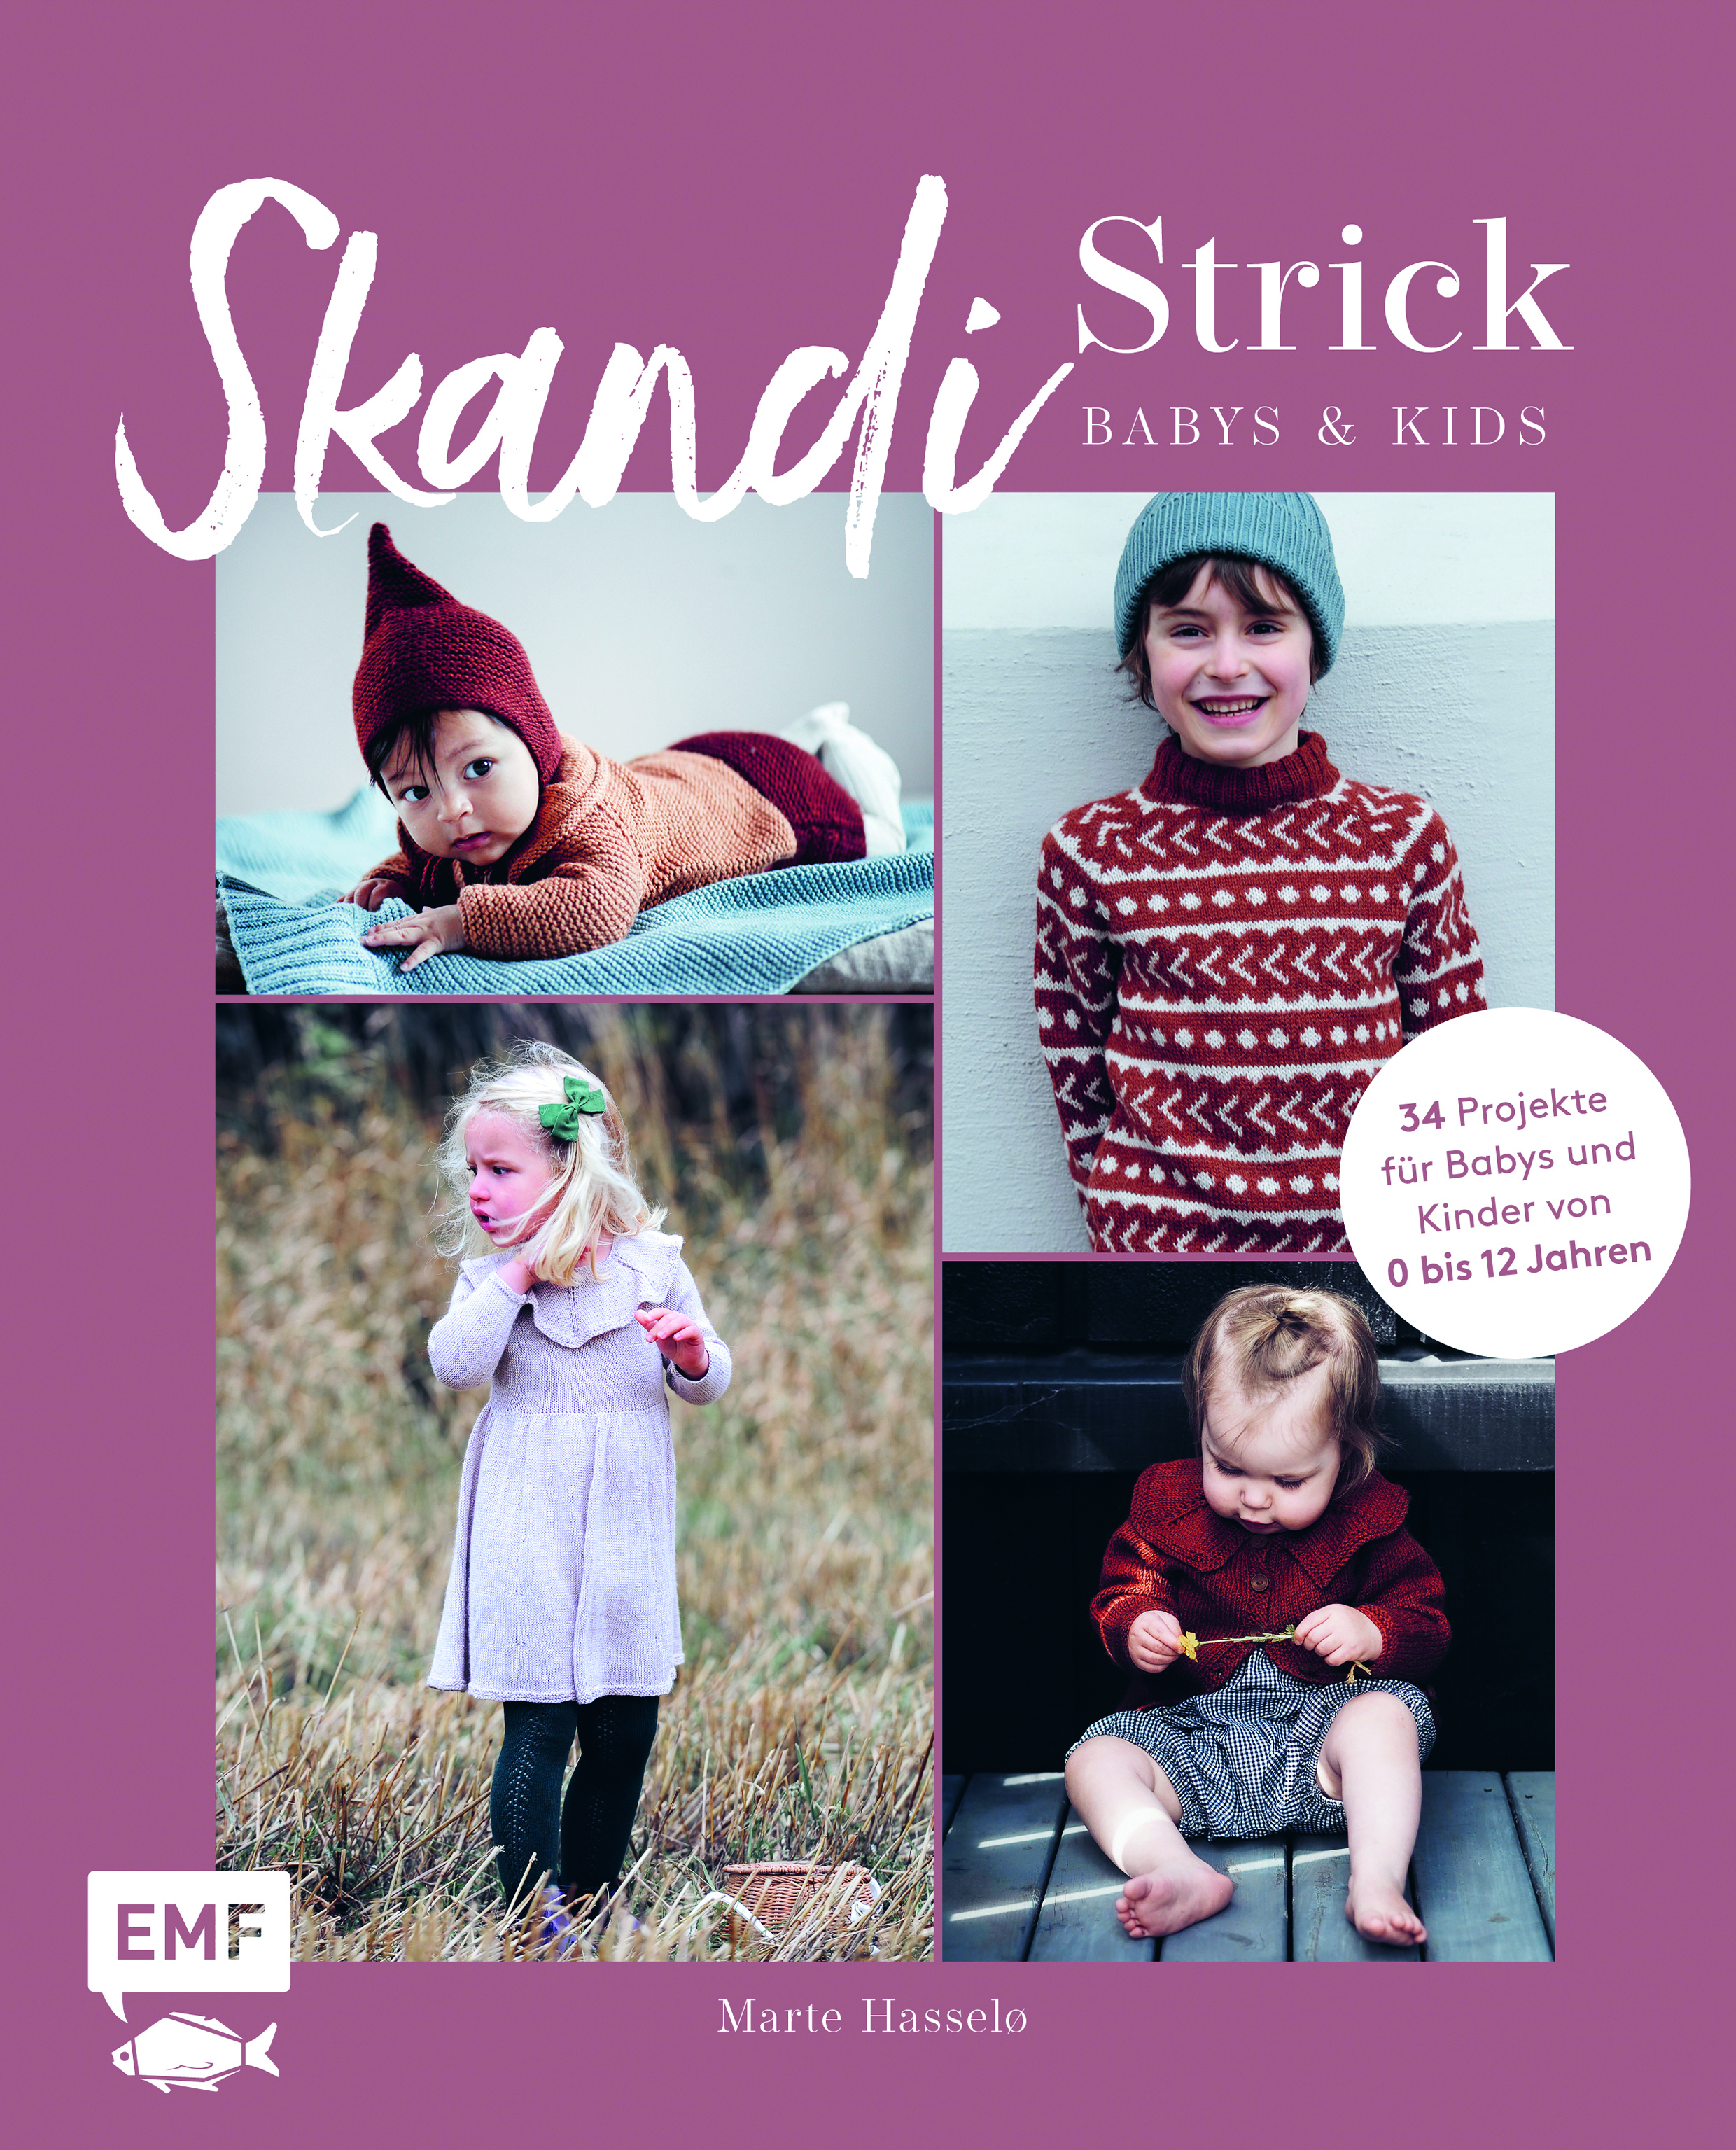 Strickanleitung Stricken Buch Skandi-Strick – Babys & Kids 0 bis 12 Jahre Hardcover